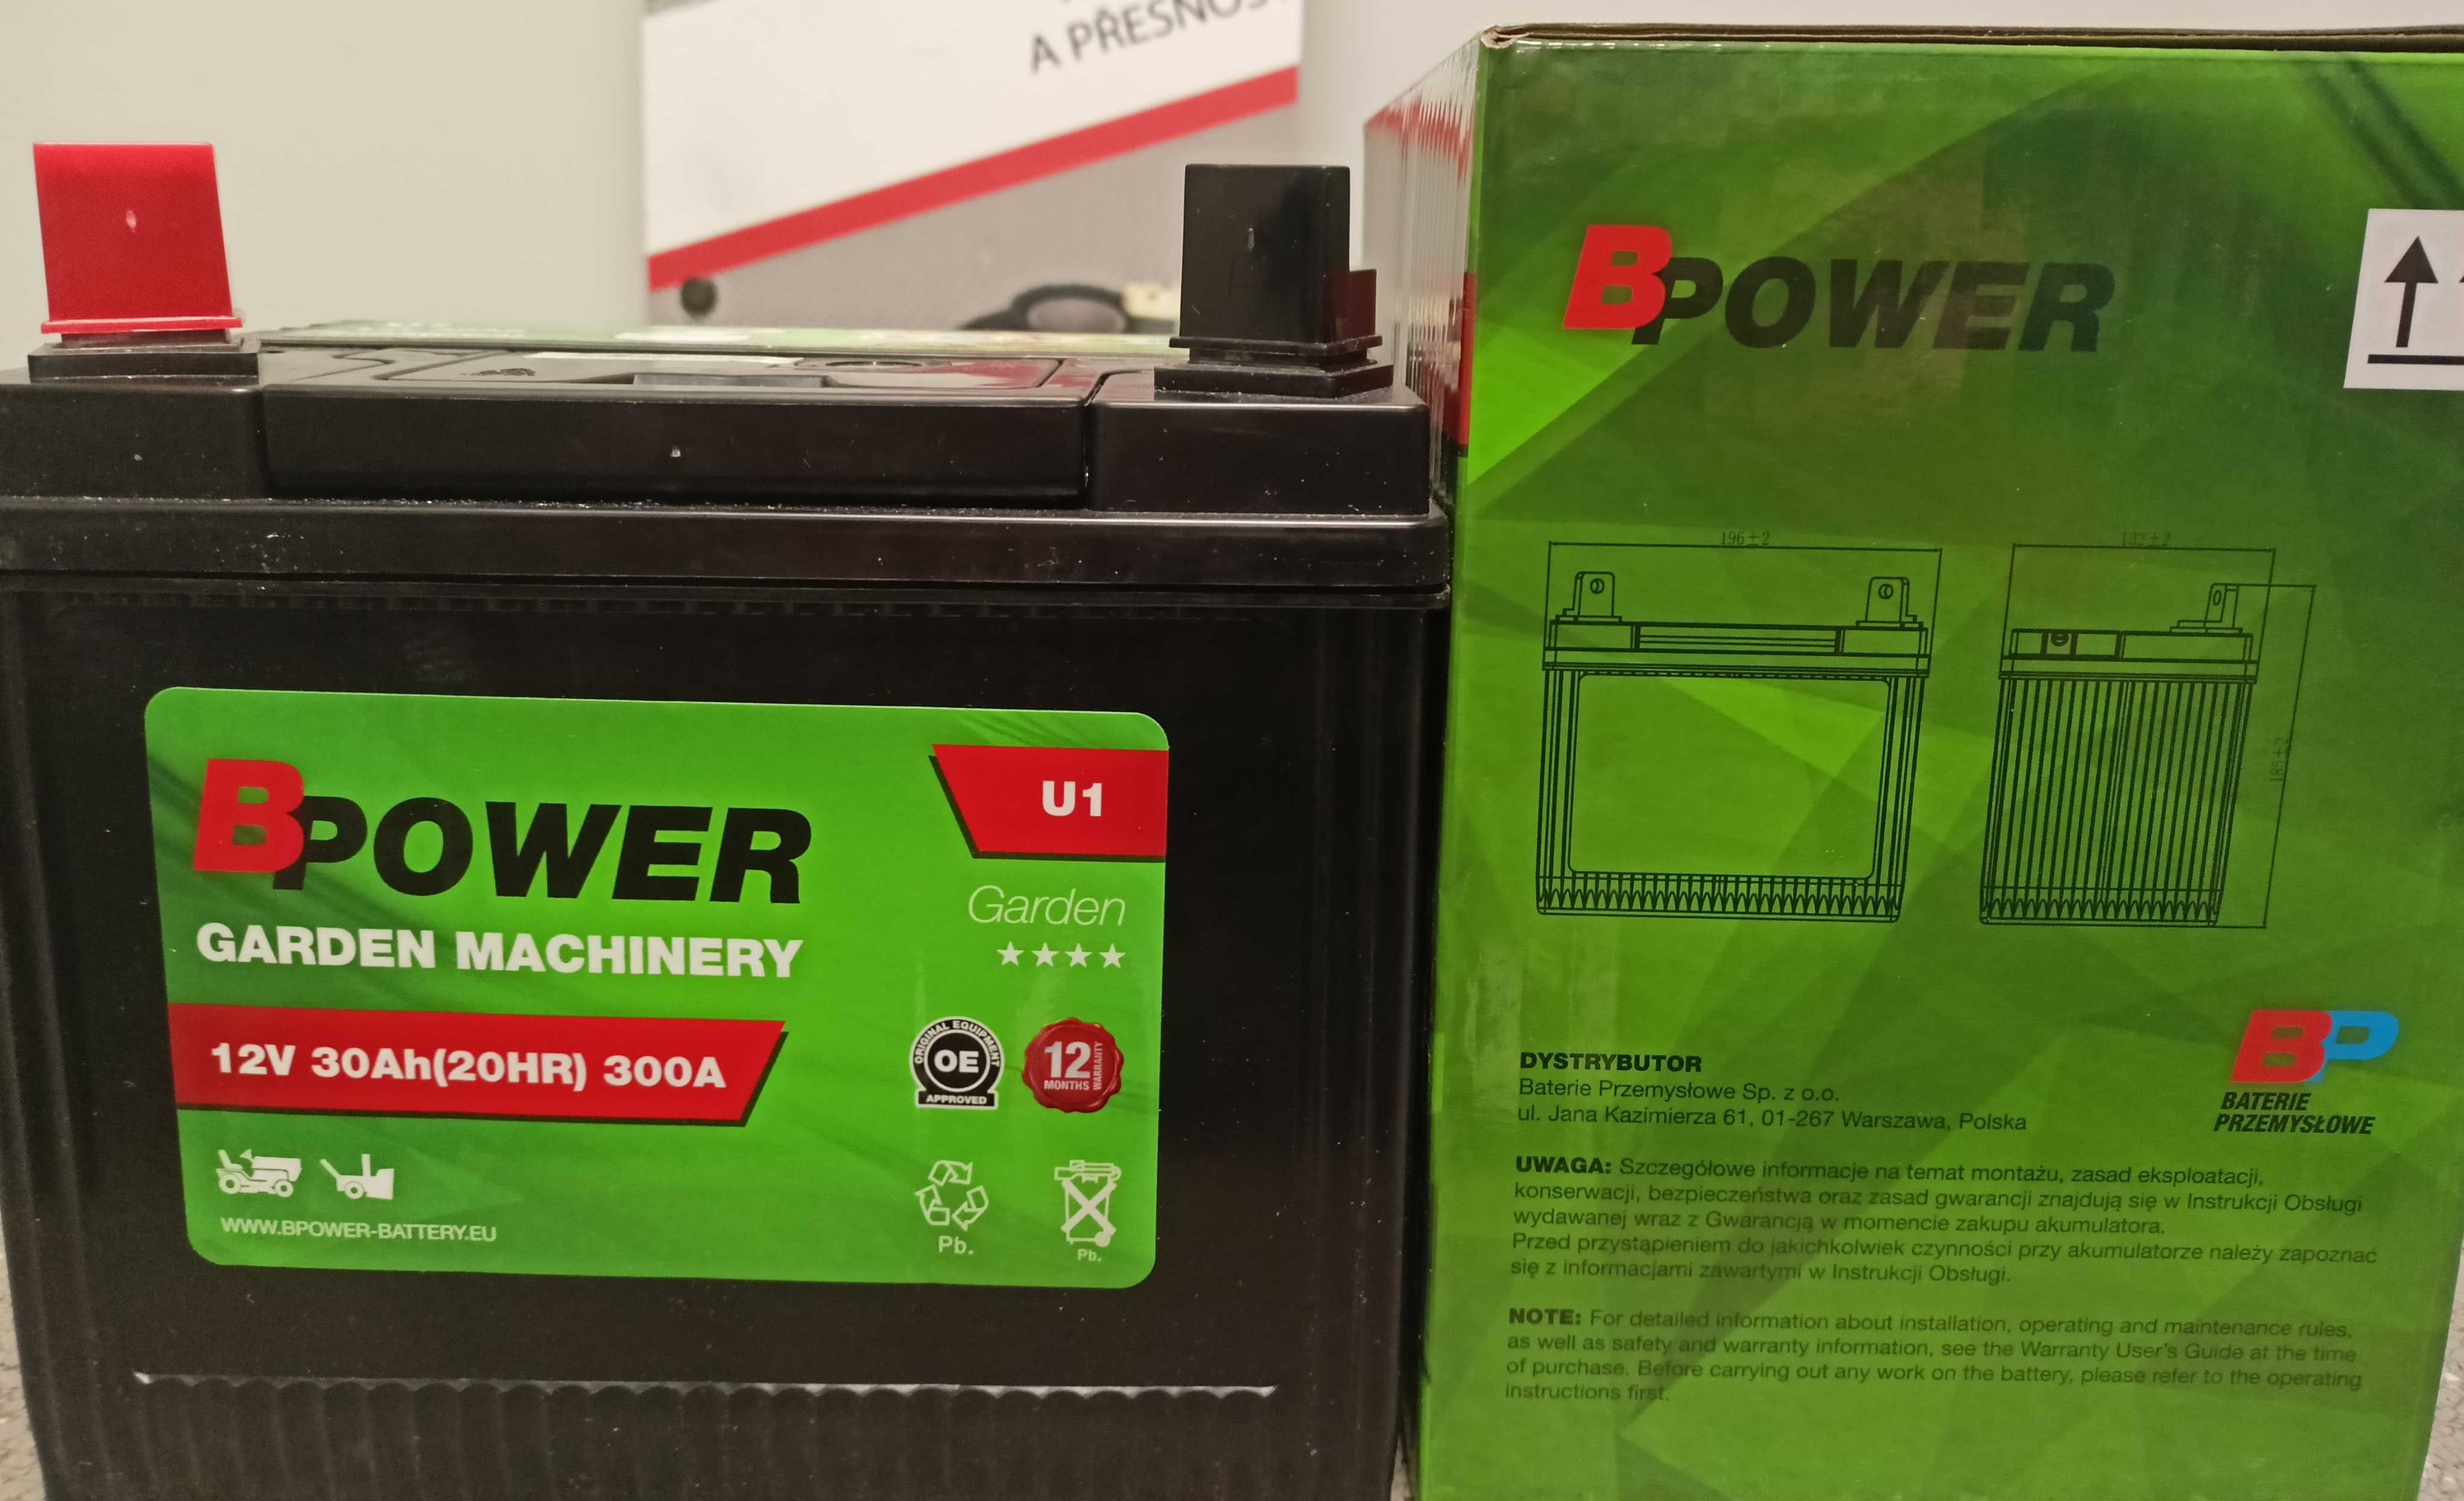 Akumulator BPower Garden U1 12V 30Ah 300A L+ Lewy Plus